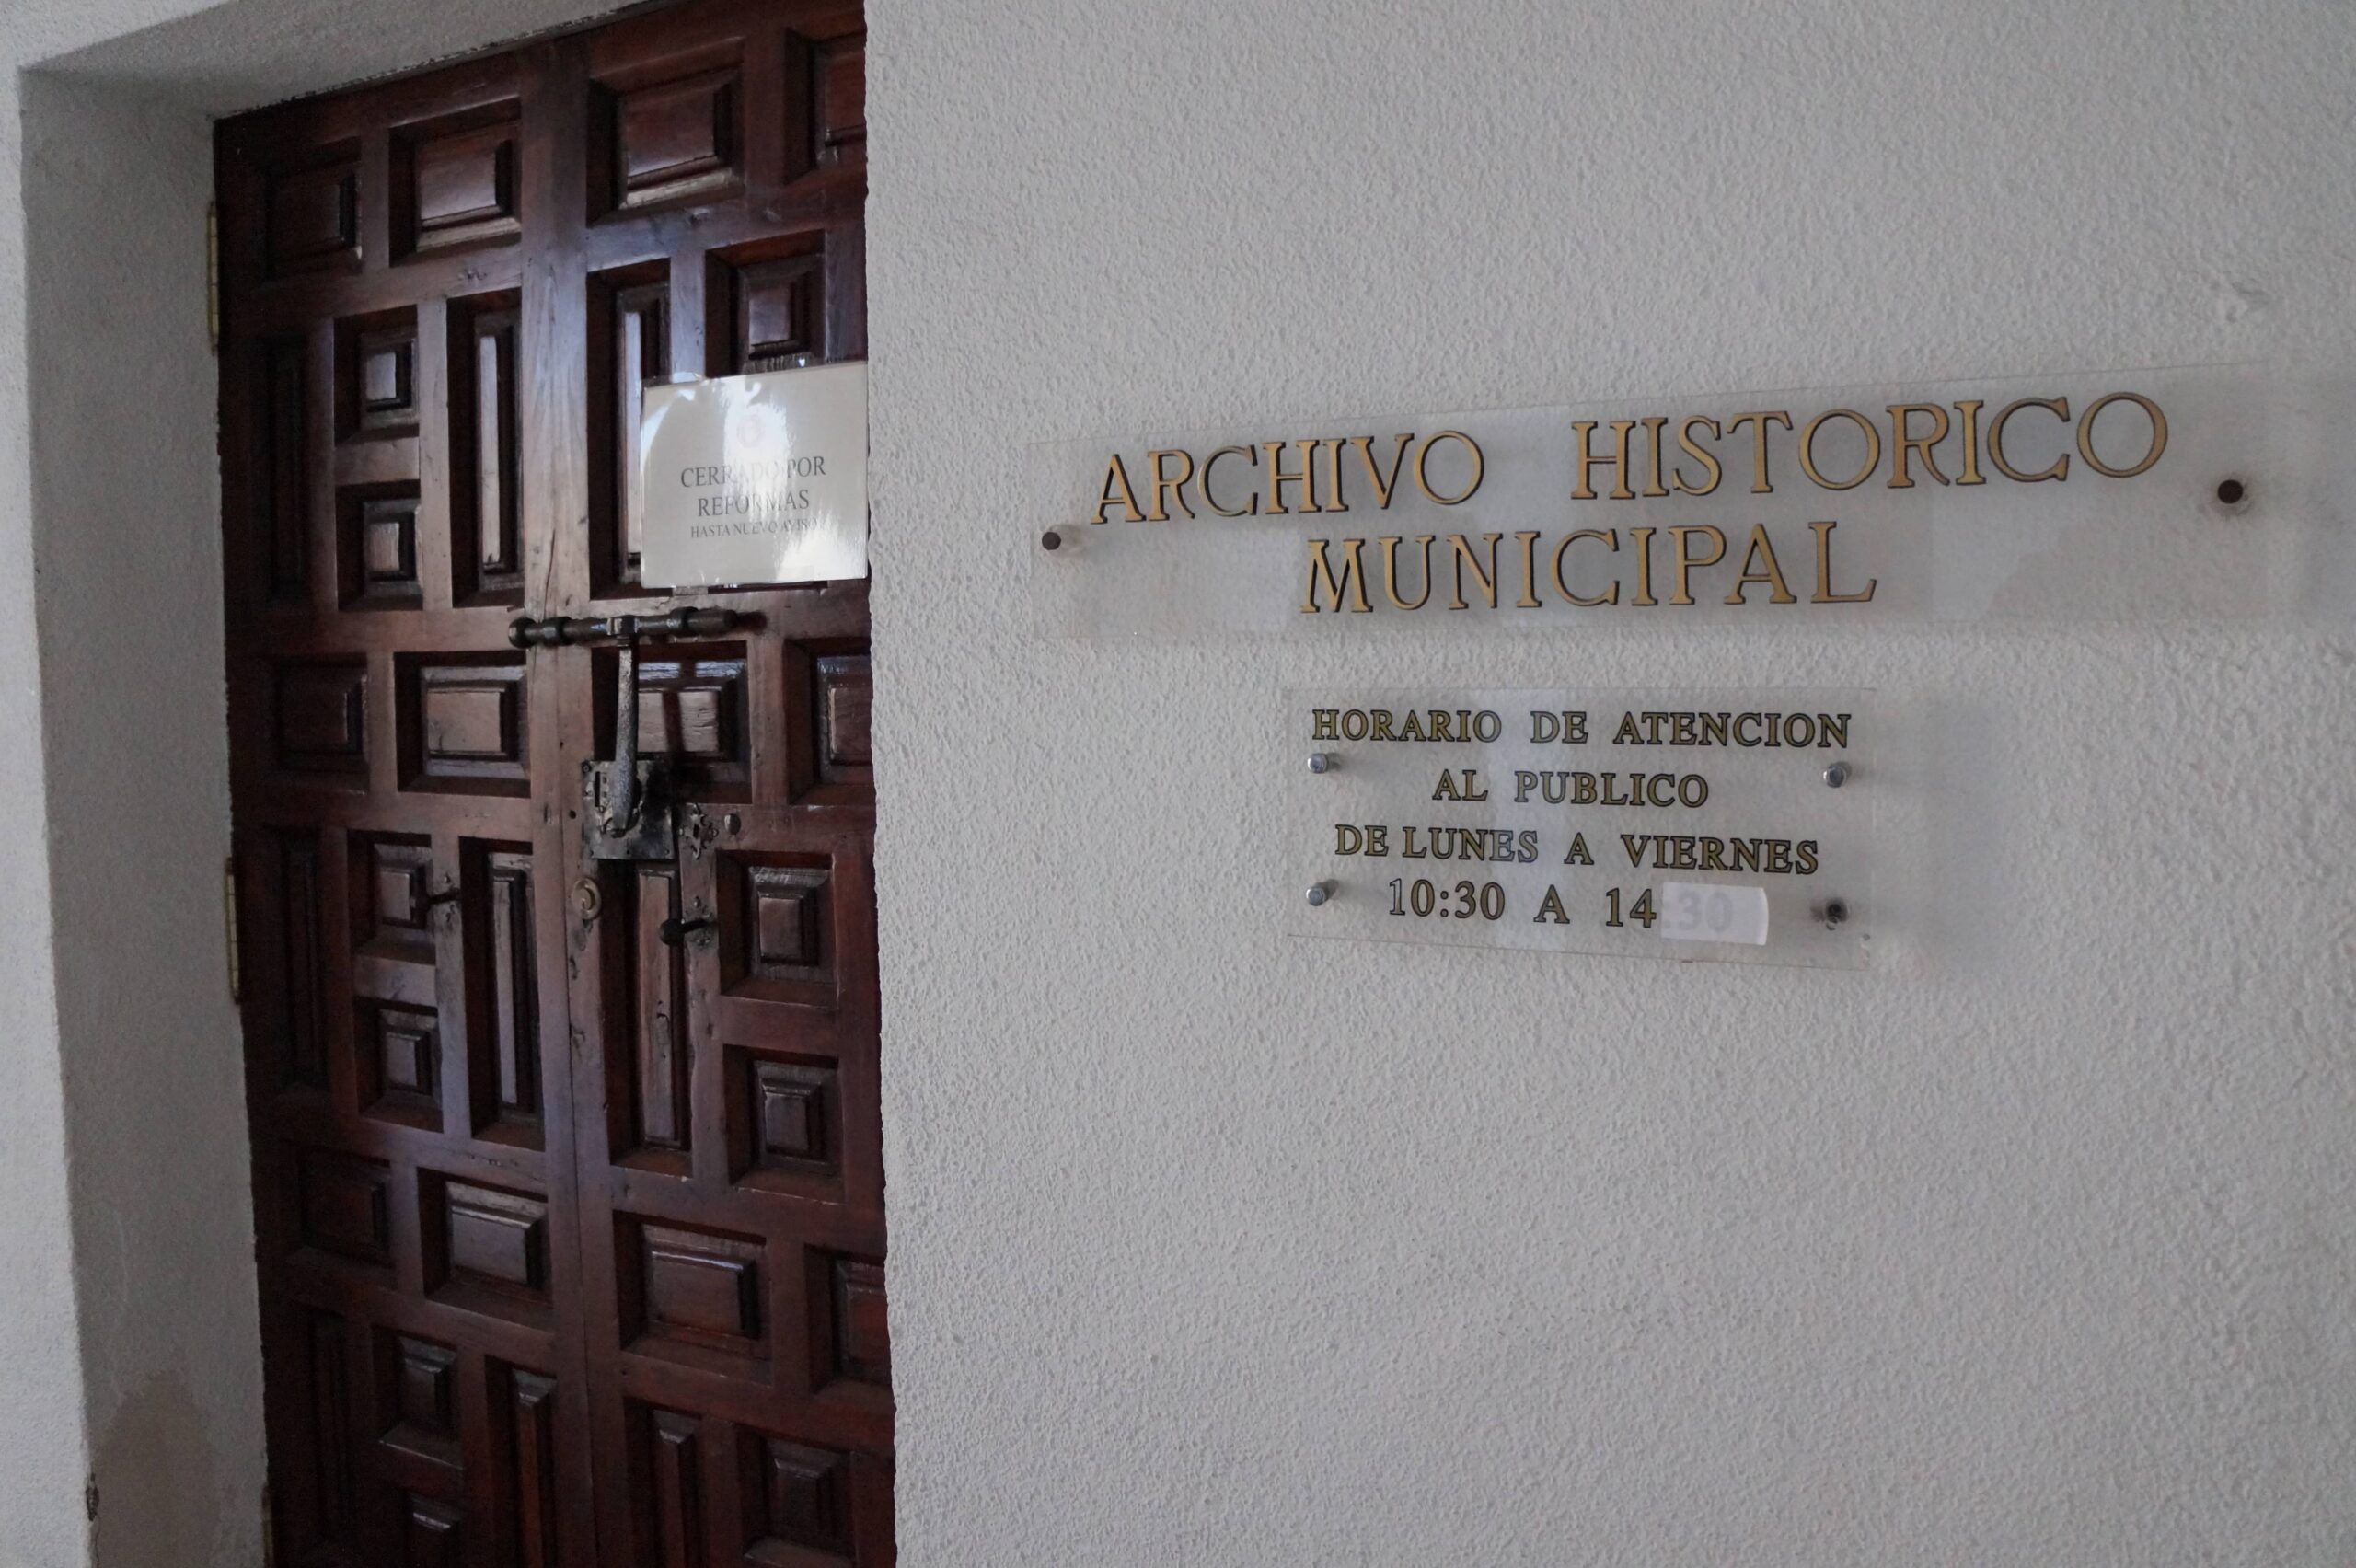 Buscan una nueva ubicación para el Archivo Histórico de Villena